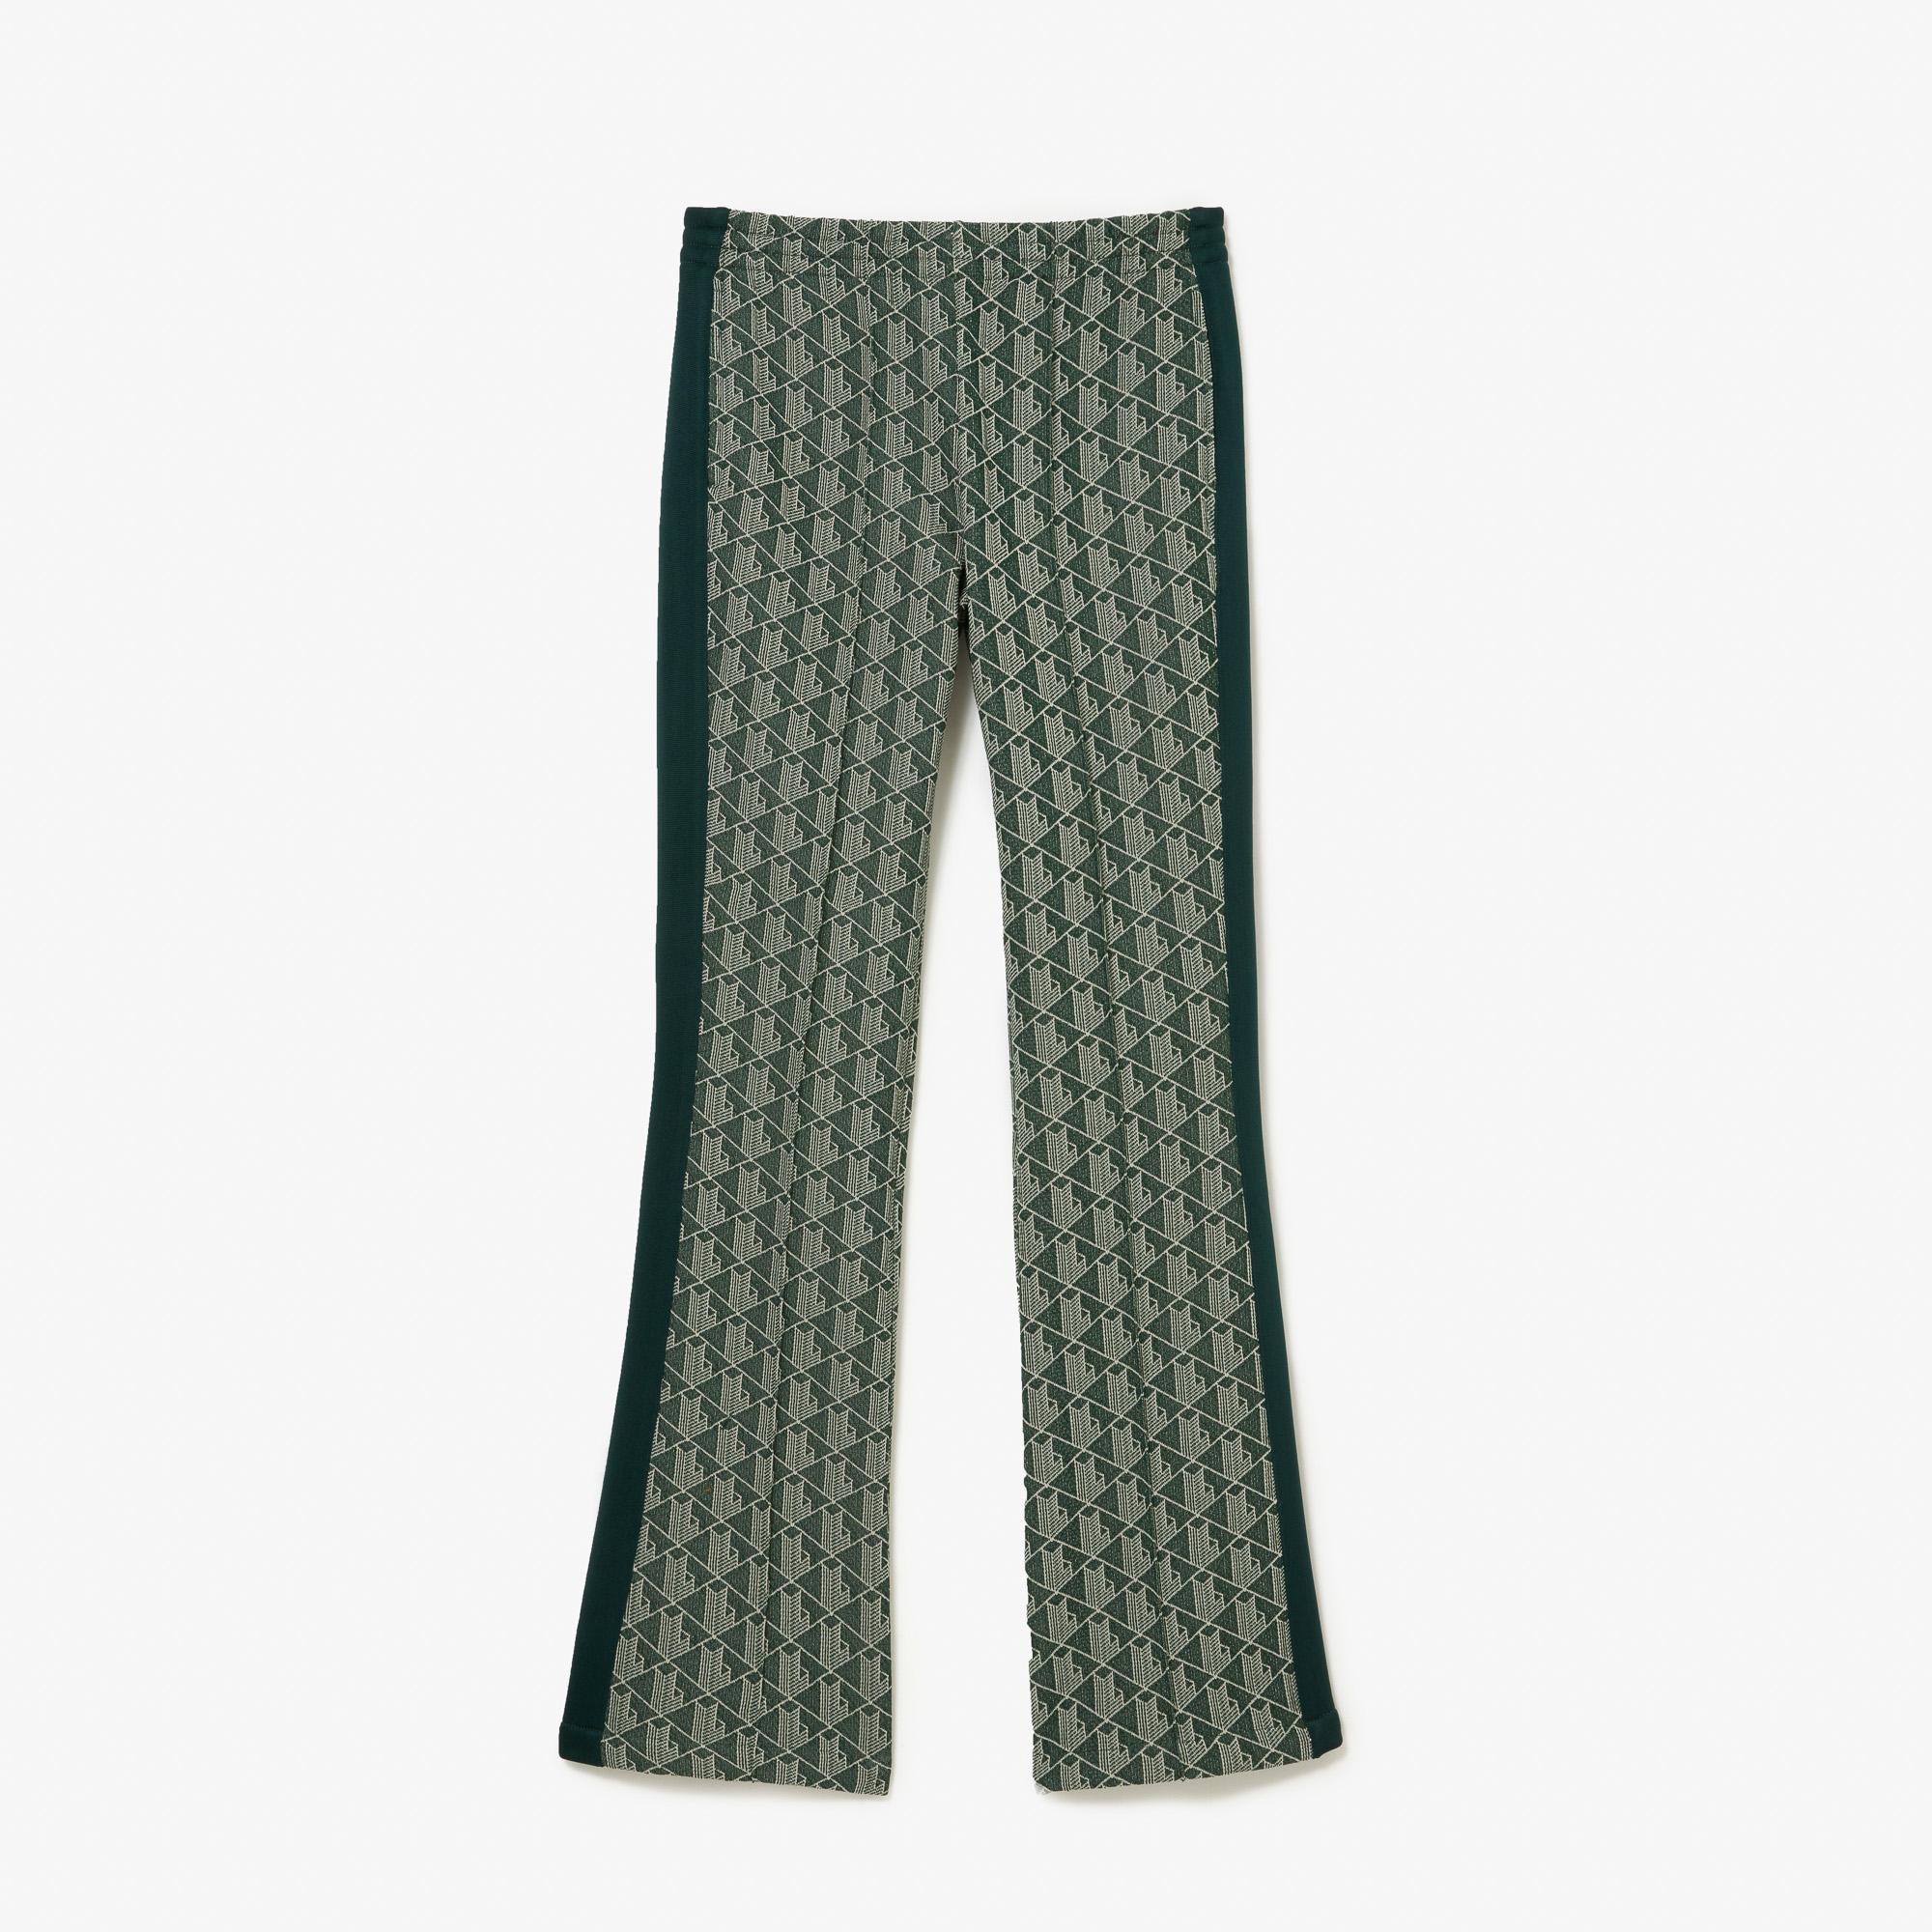 Dámske teplákové nohavice Lacoste s monogramovou potlačou